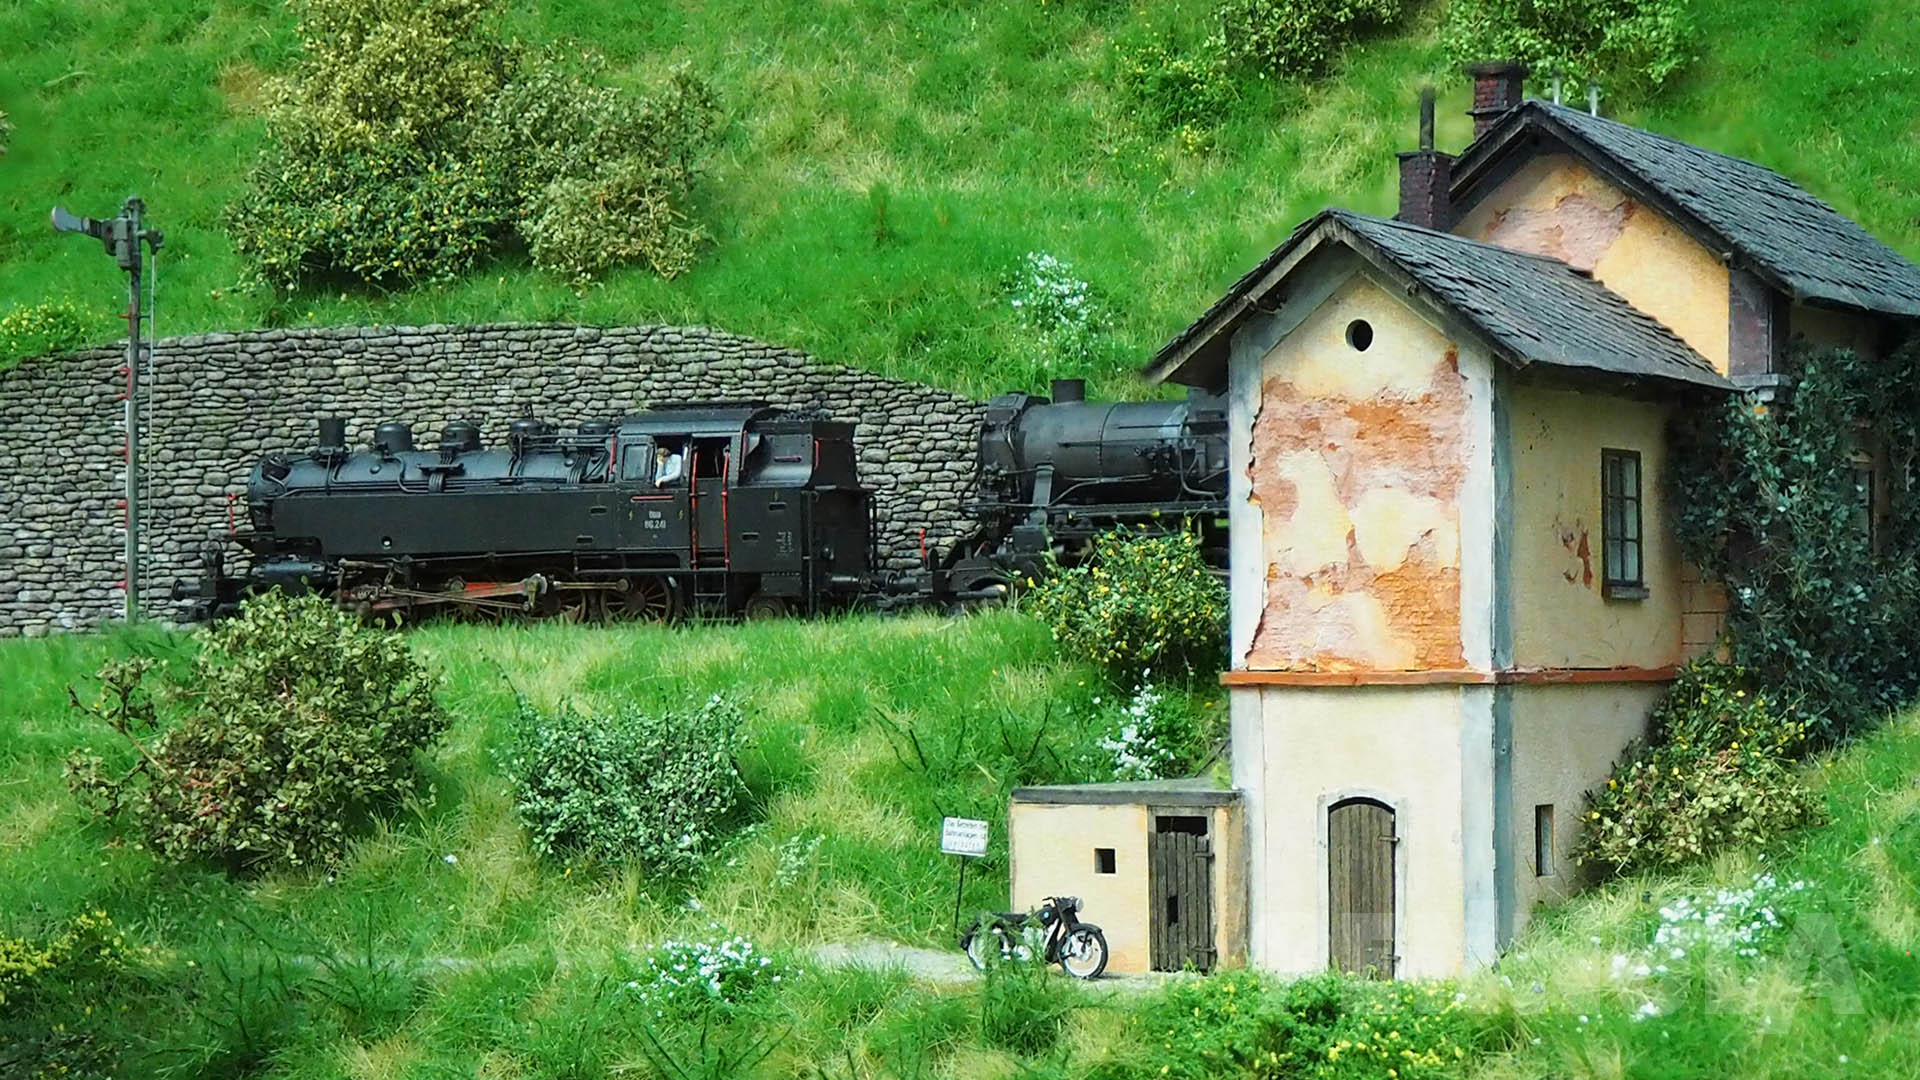 Dampflokomotiven der ÖBB auf der Modelleisenbahn von Gottfried Reither.